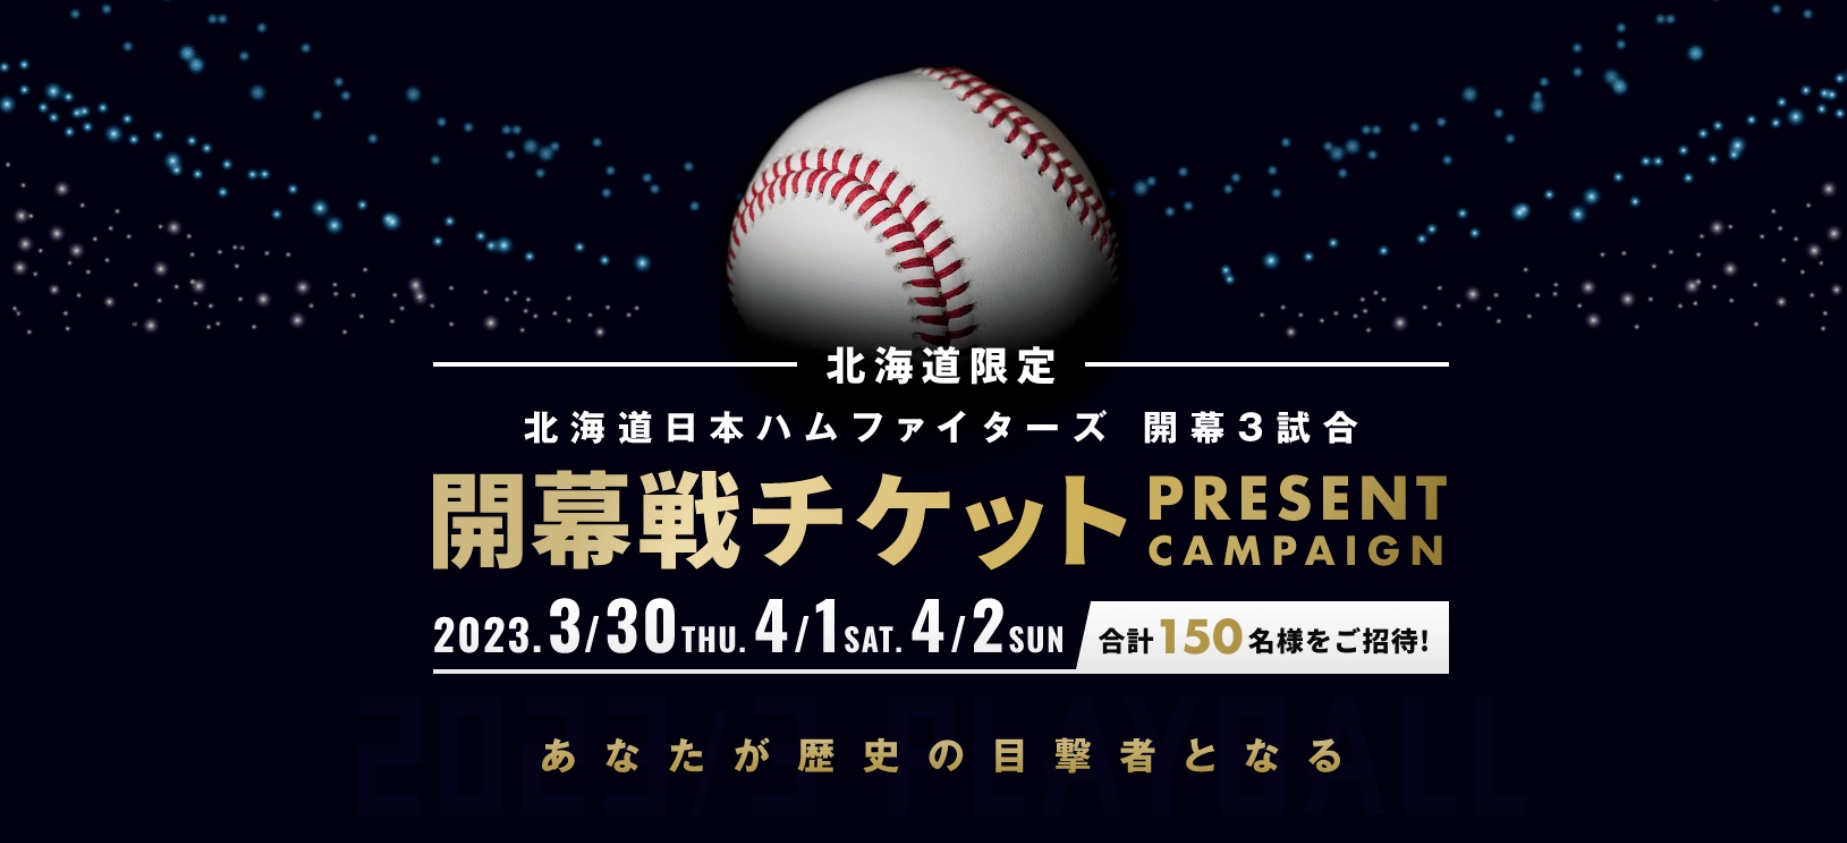 日本ハムファイターズ エスコンフィールド北海道開幕戦 - 野球